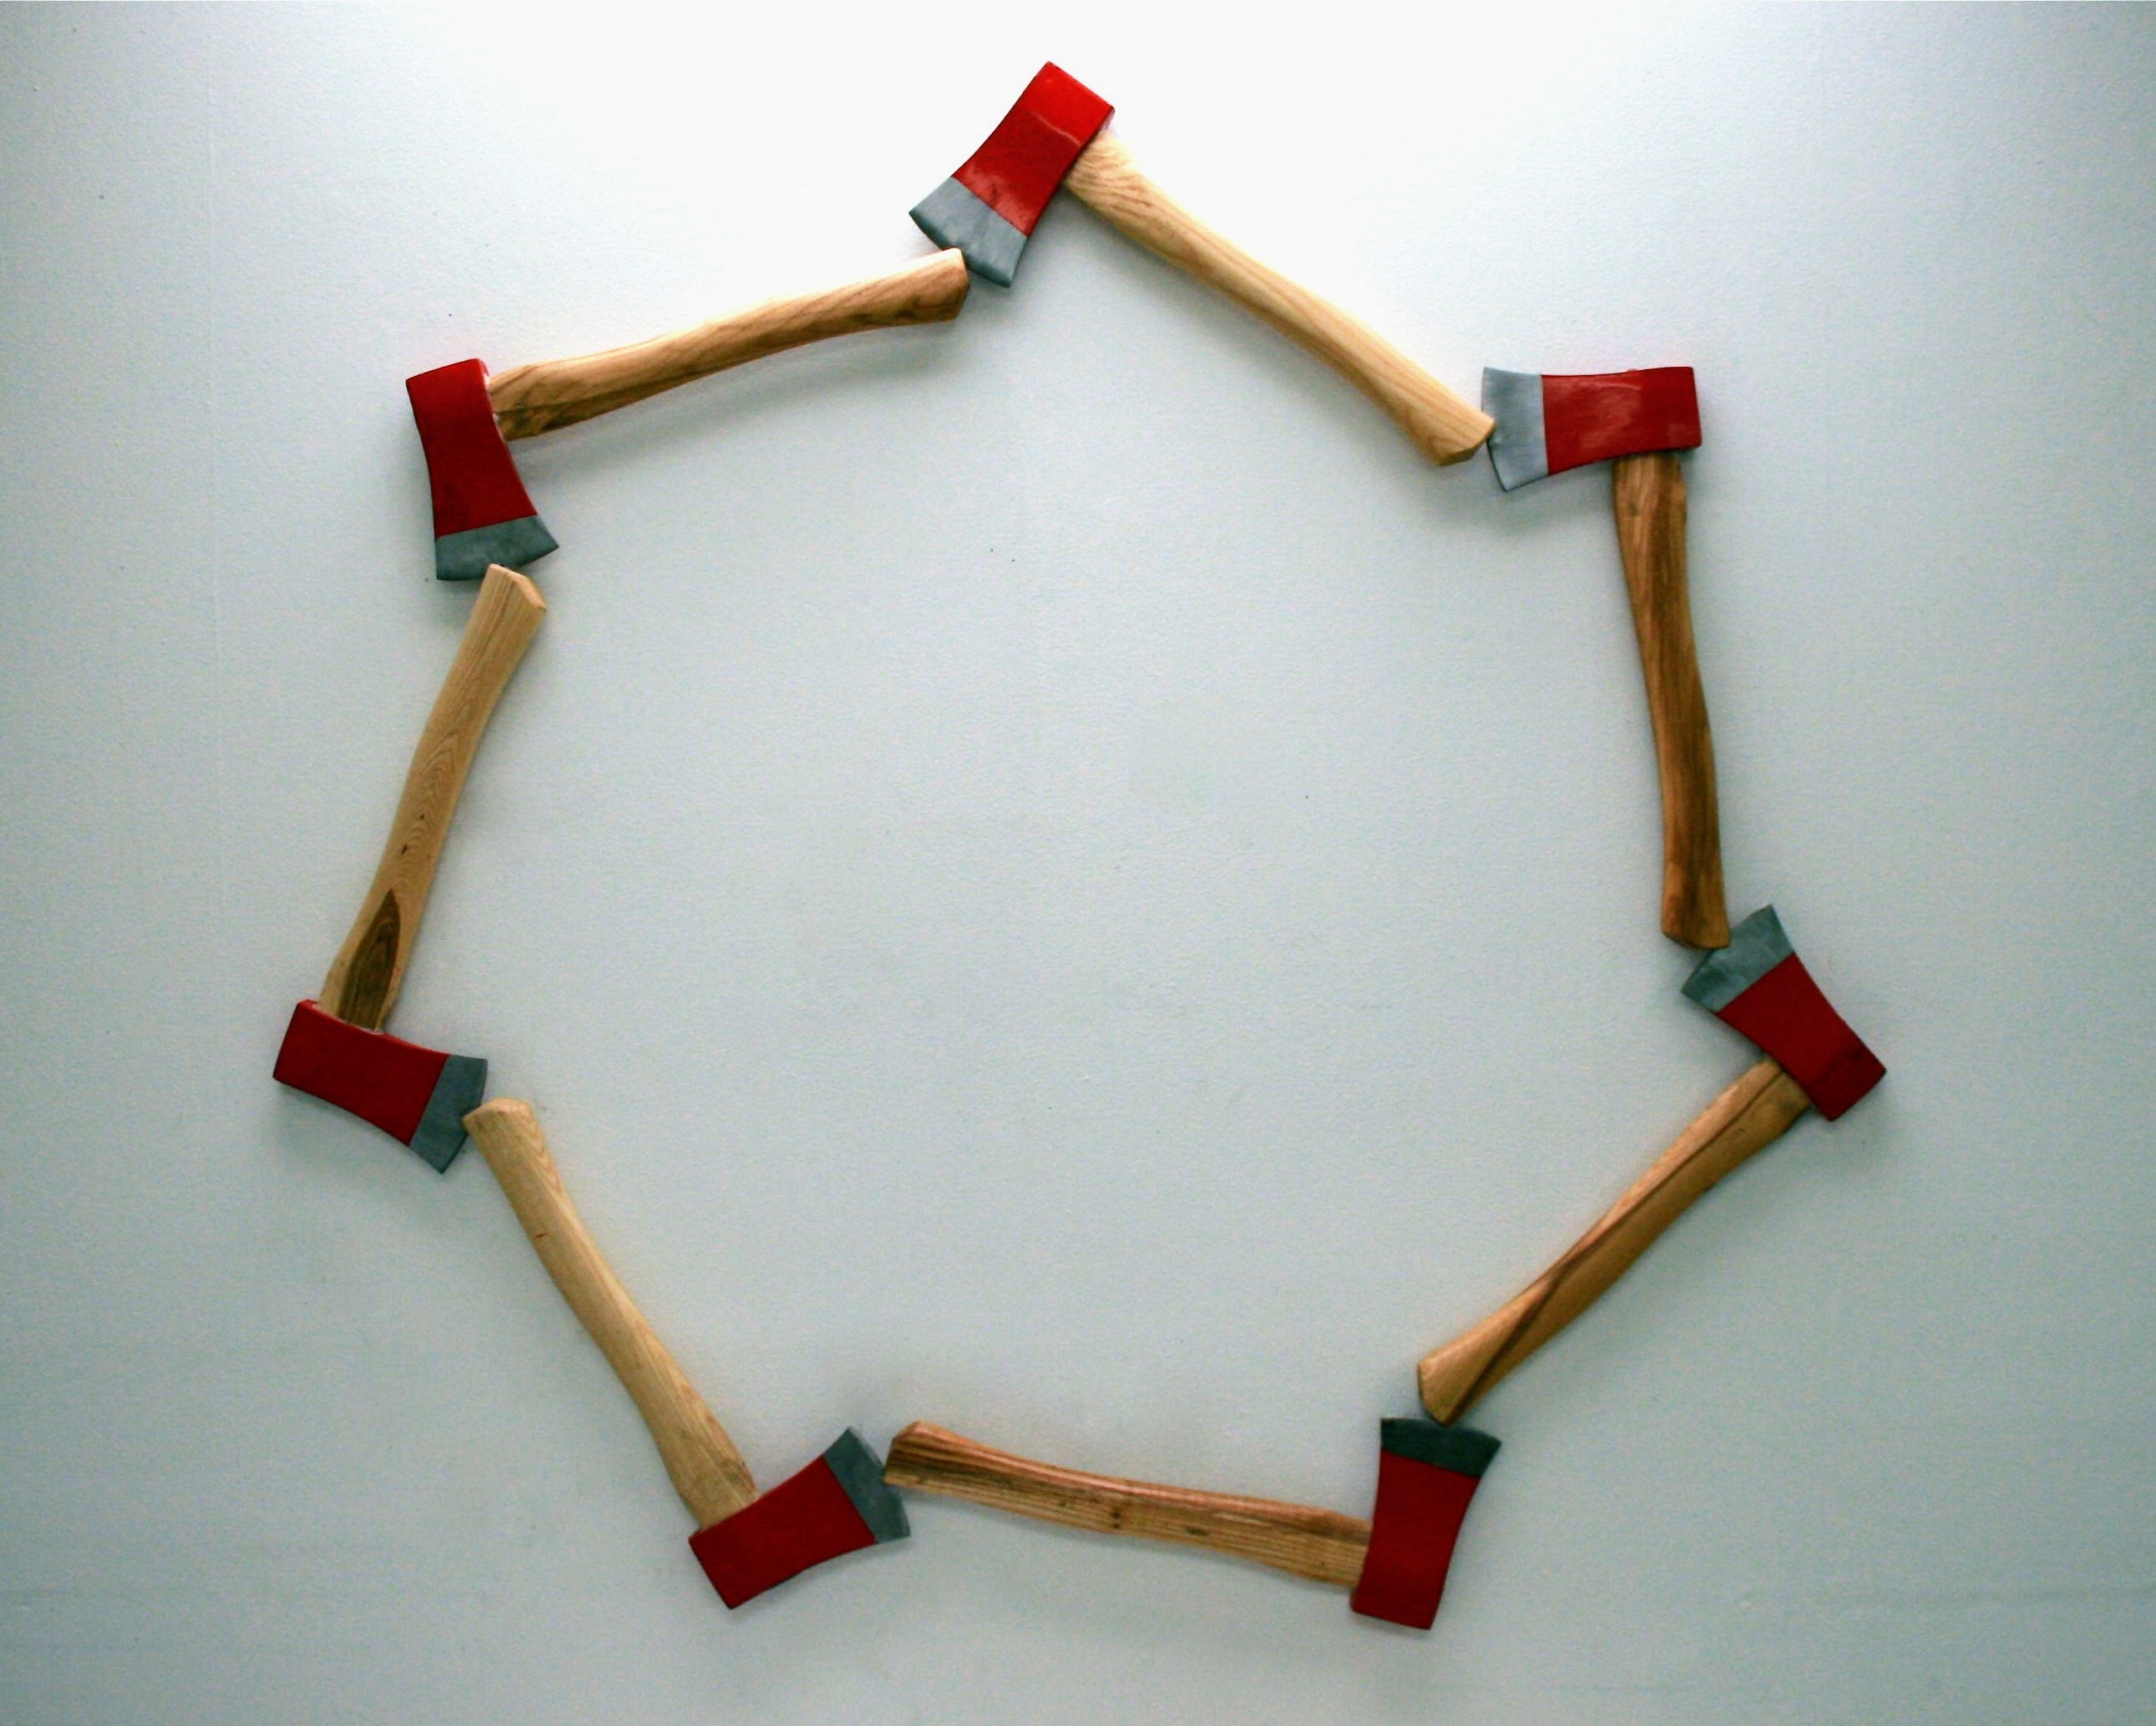 Raymond Padrón, “Fraternity”, modified hatchets, 2016